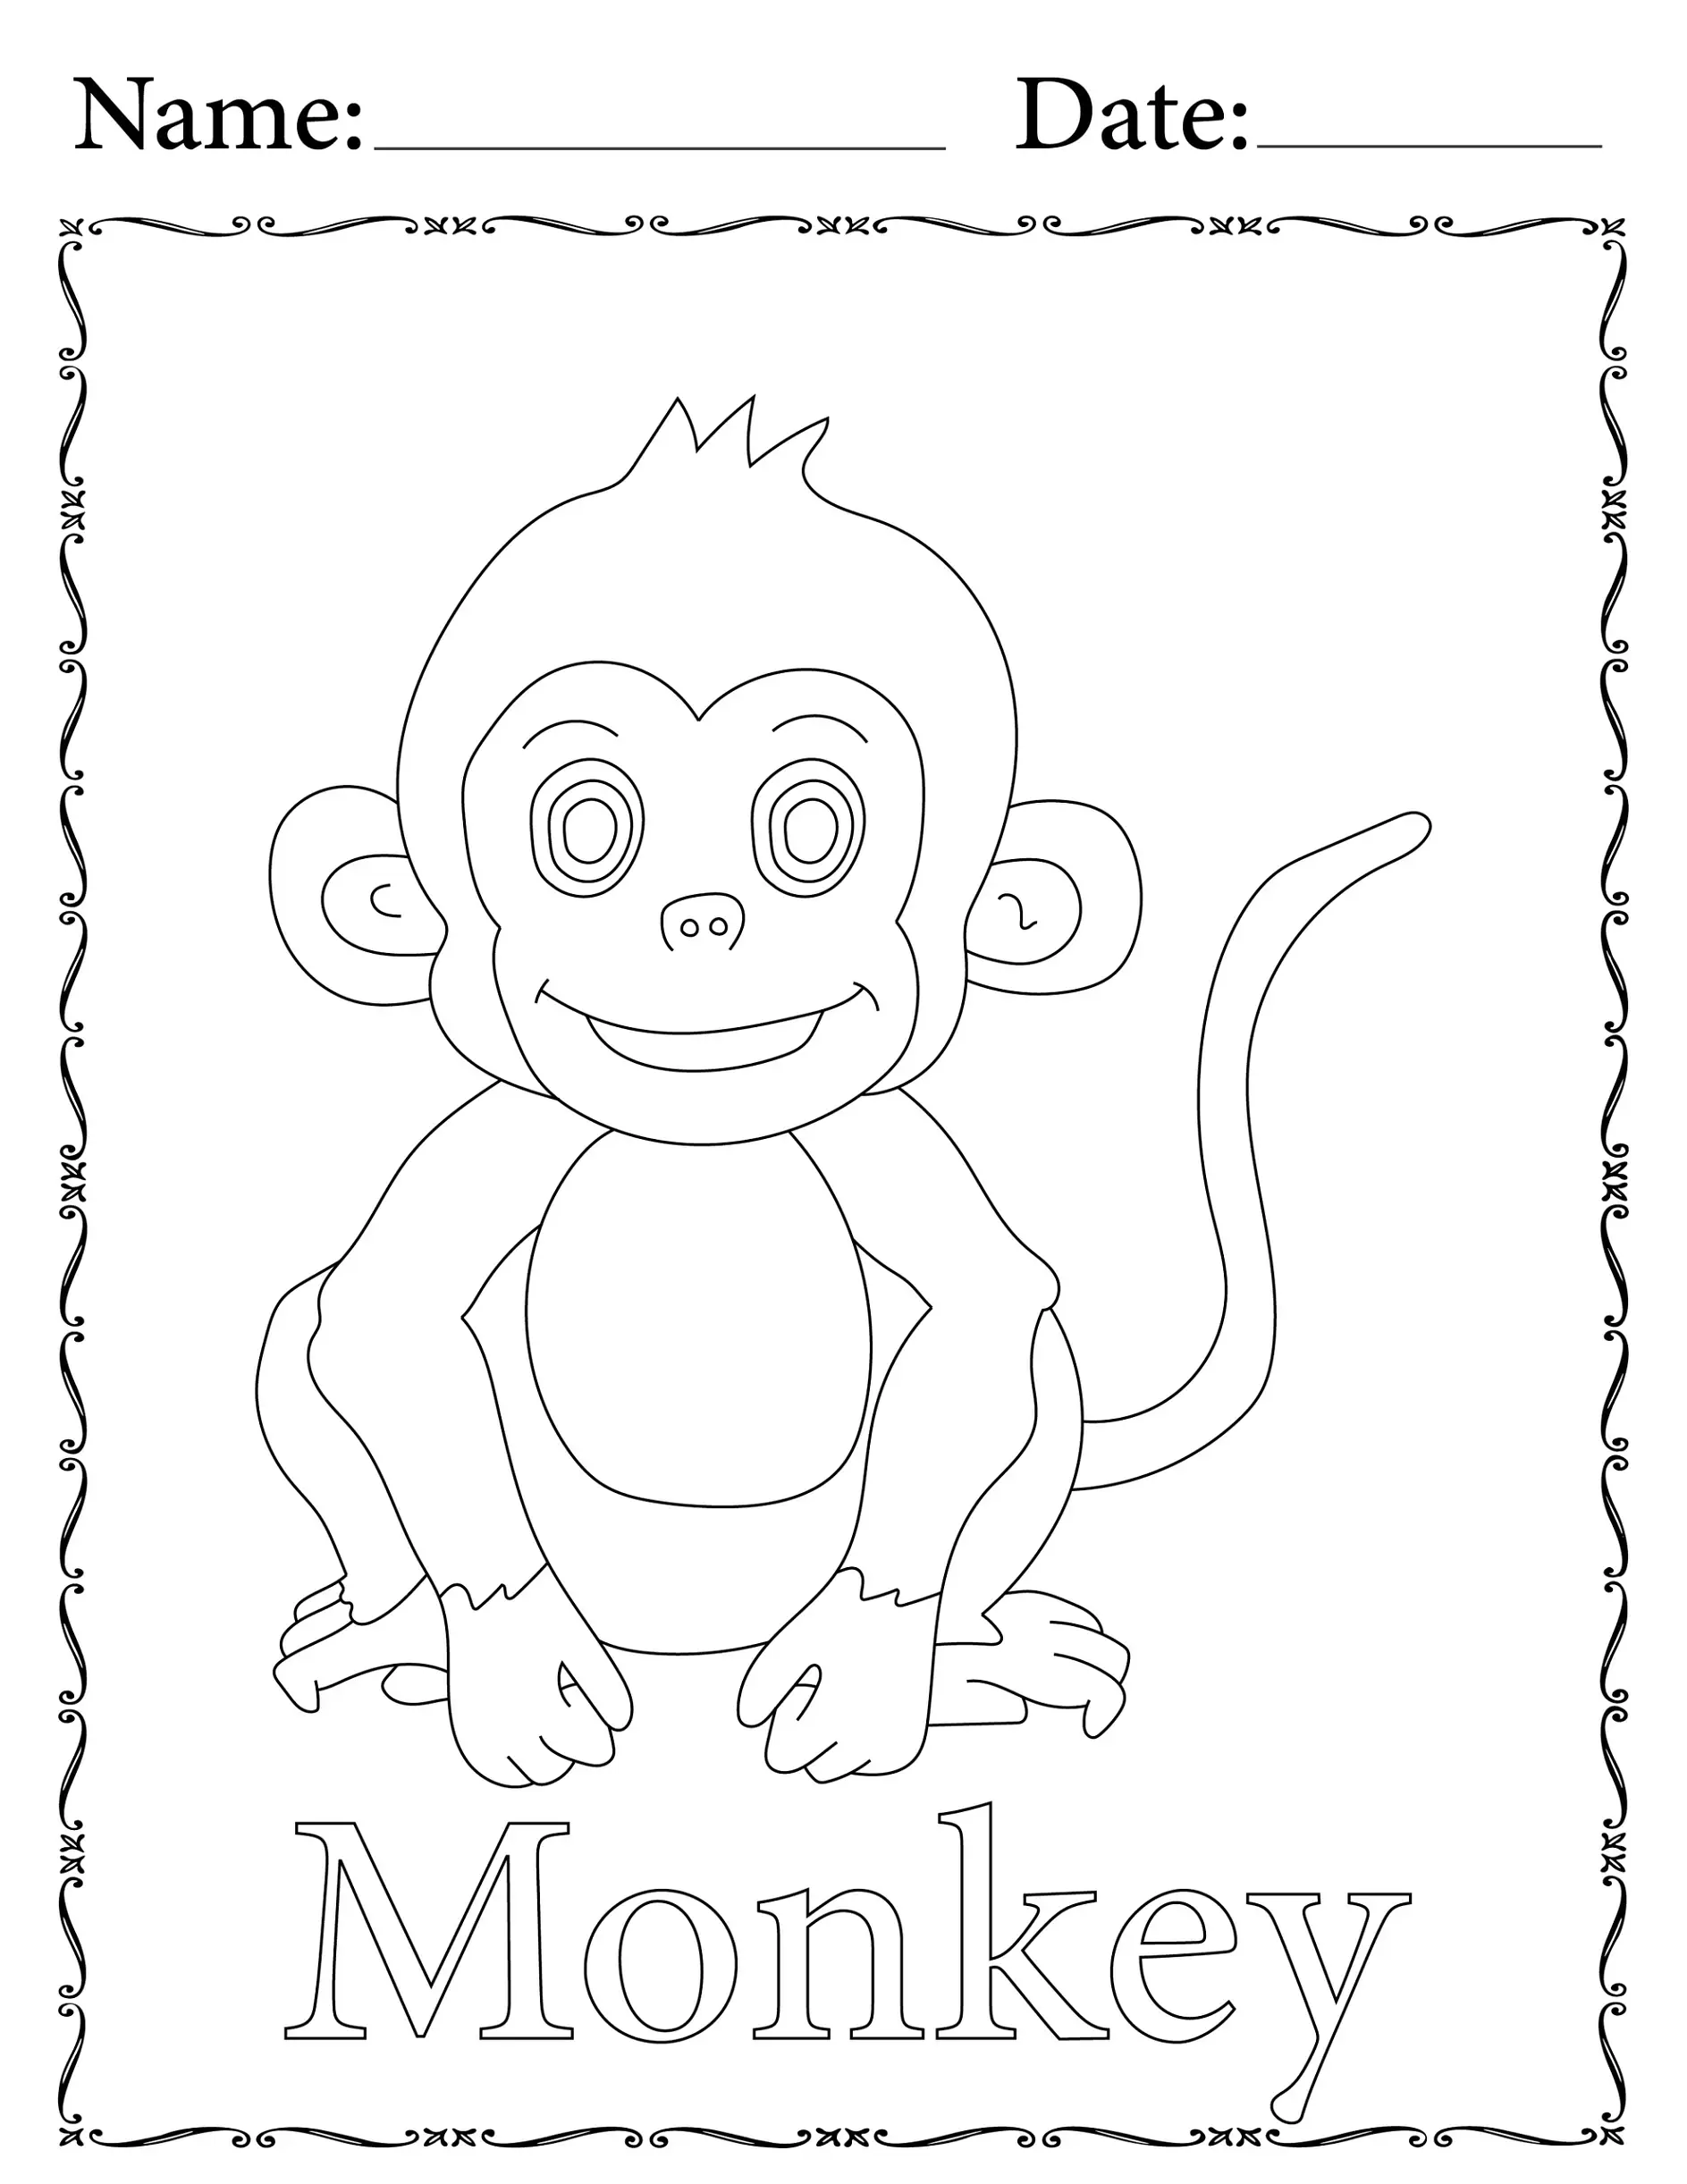 Ausmalbild Affe sitzt im Rahmen mit Platz für Name und Datum